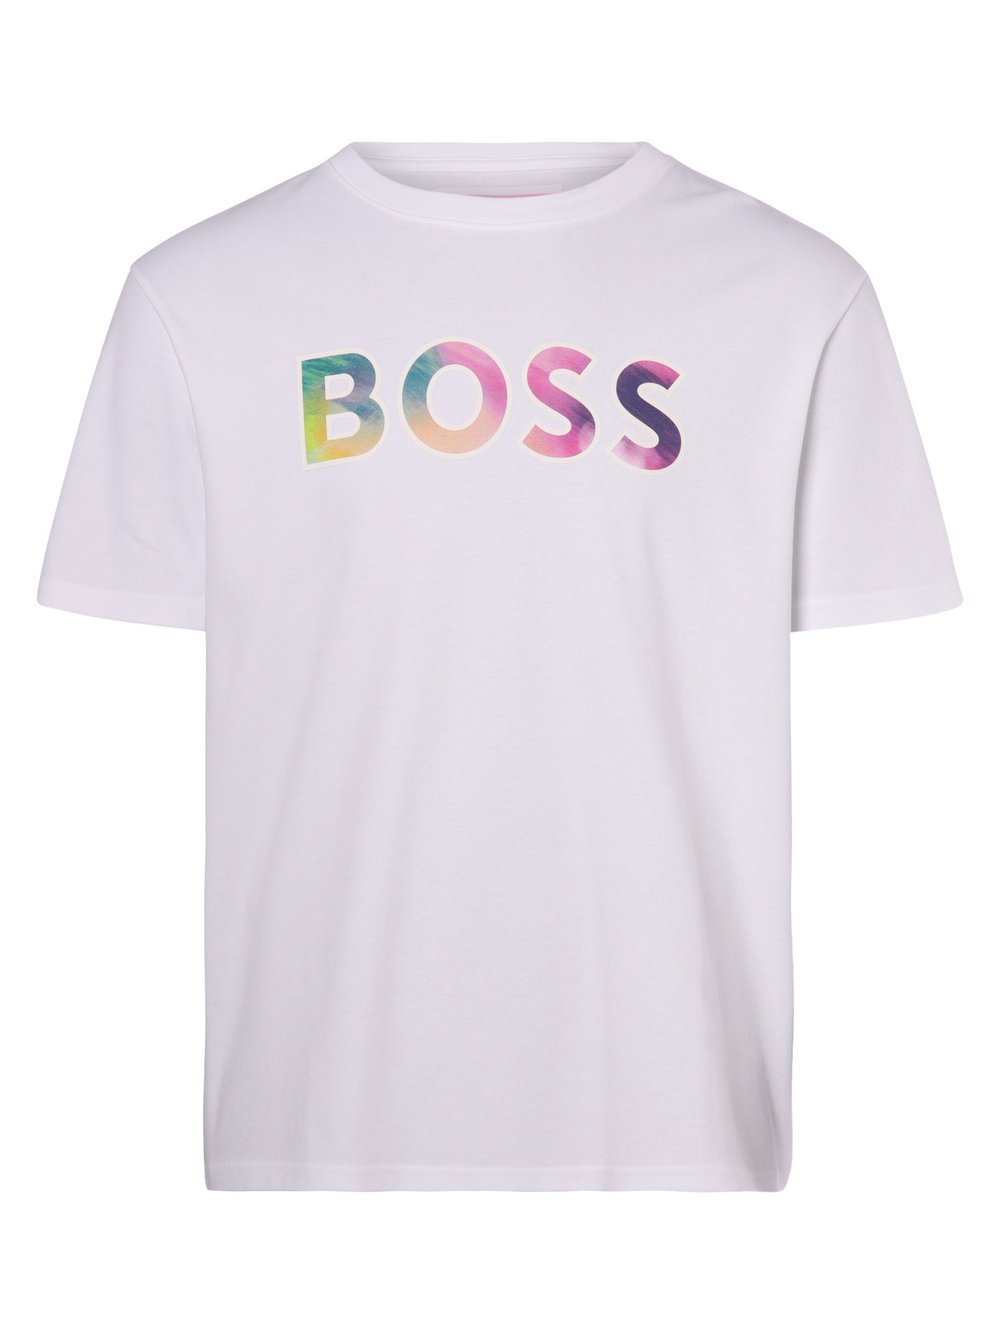 BOSS Orange - T-shirt męski – T_Love_2, biały